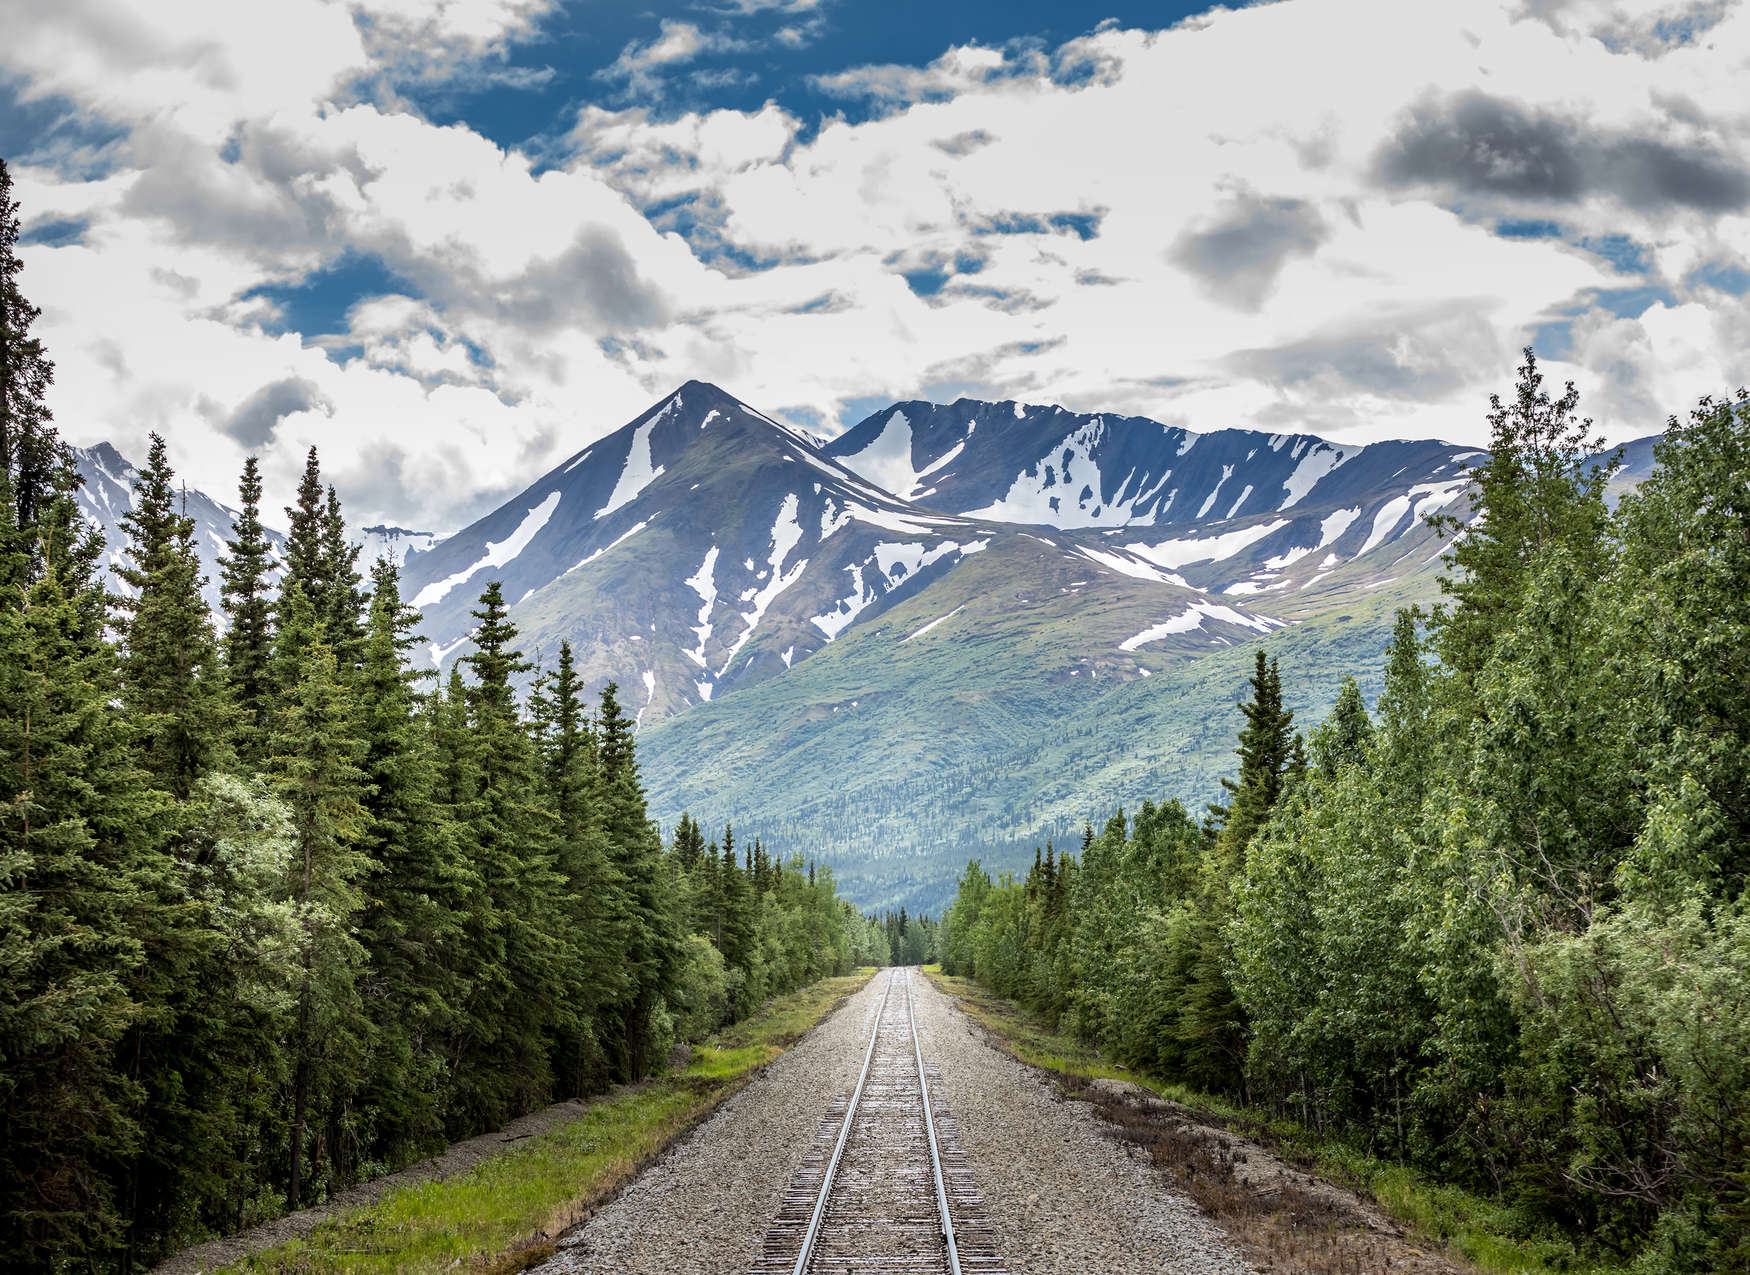             Fototapete mit Zuggleisen durch einen Wald am Gebirge – Grün, Blau, Grau
        